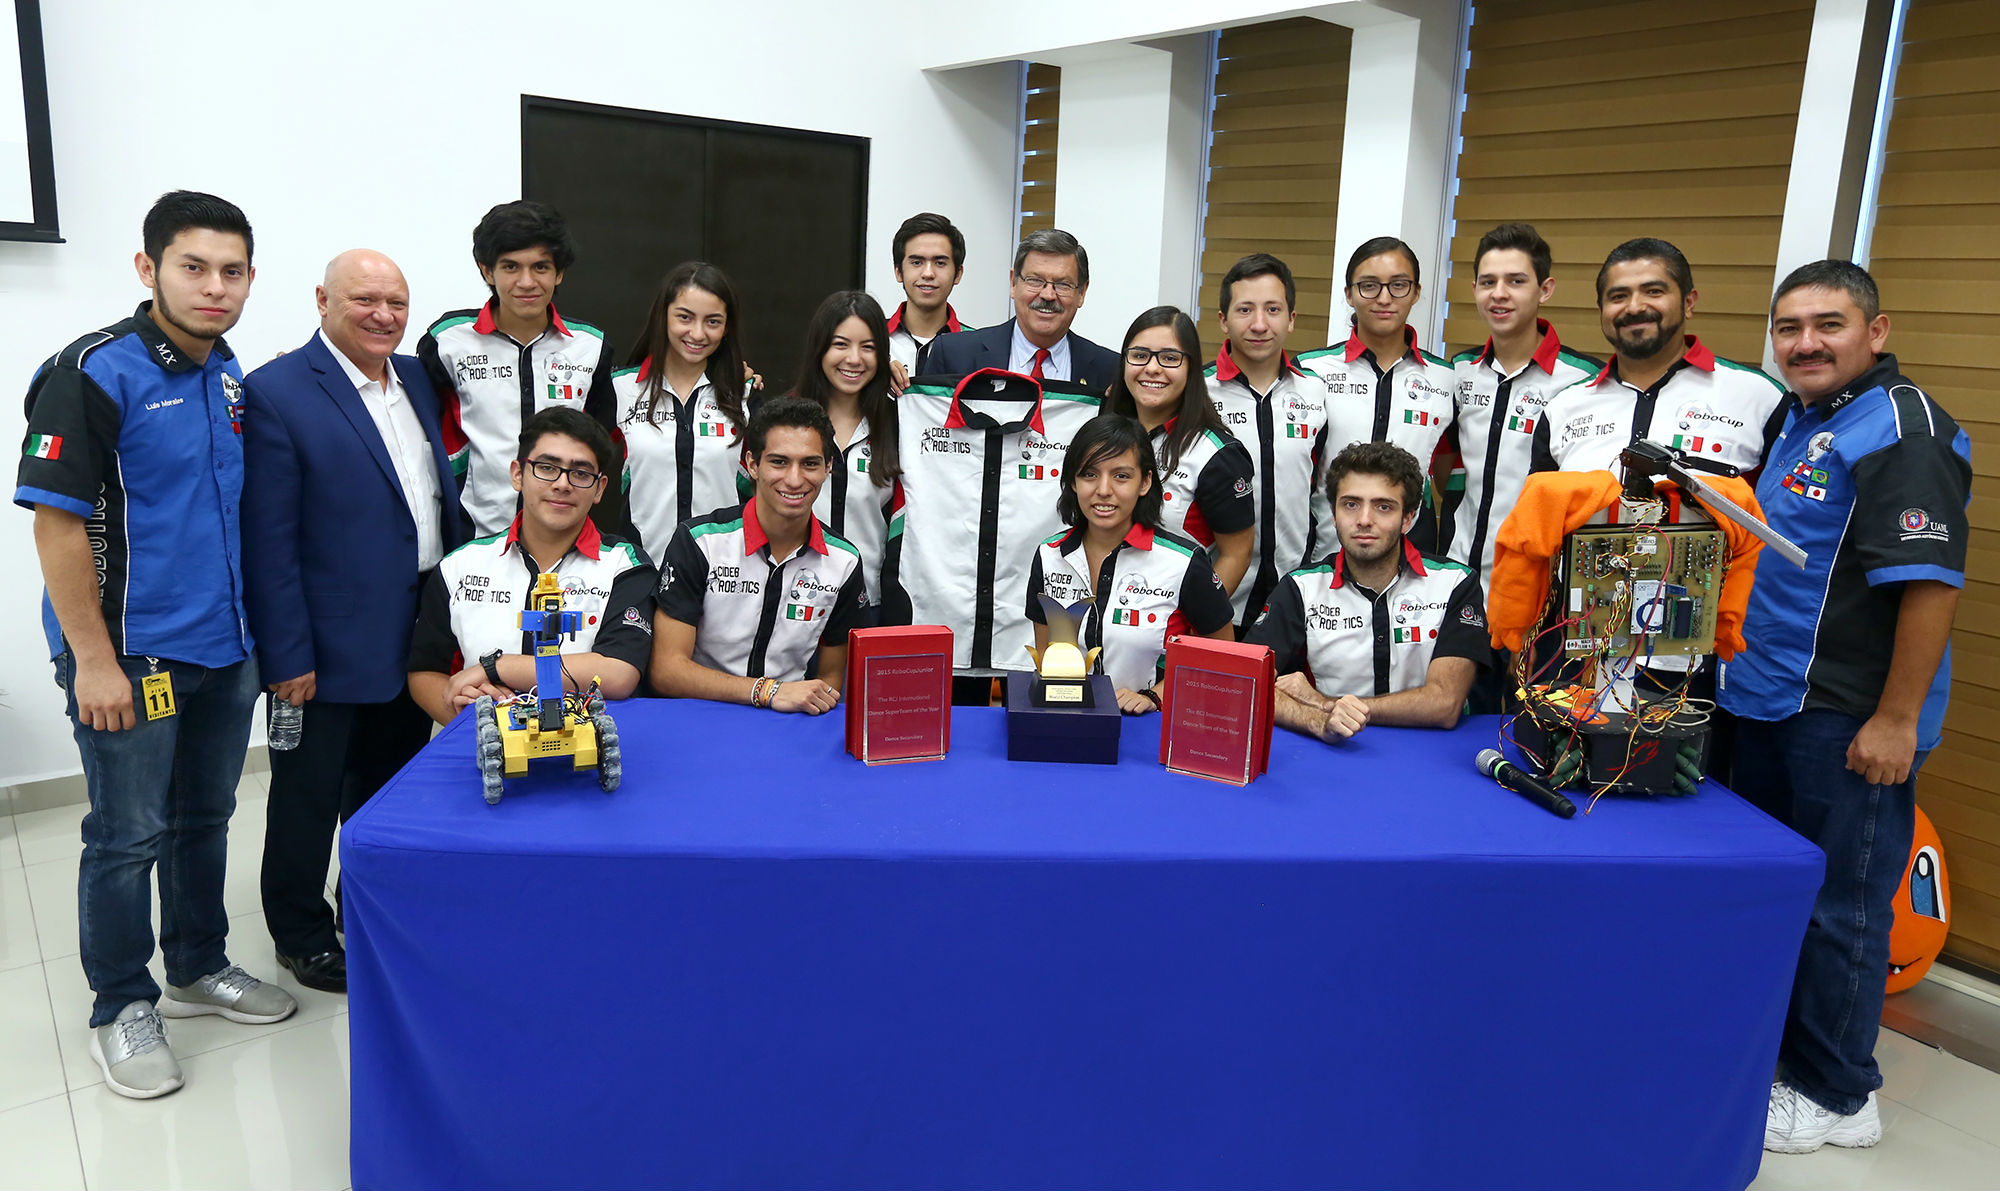 Reconoce UANL a ganadores del Robocup Japón 2017